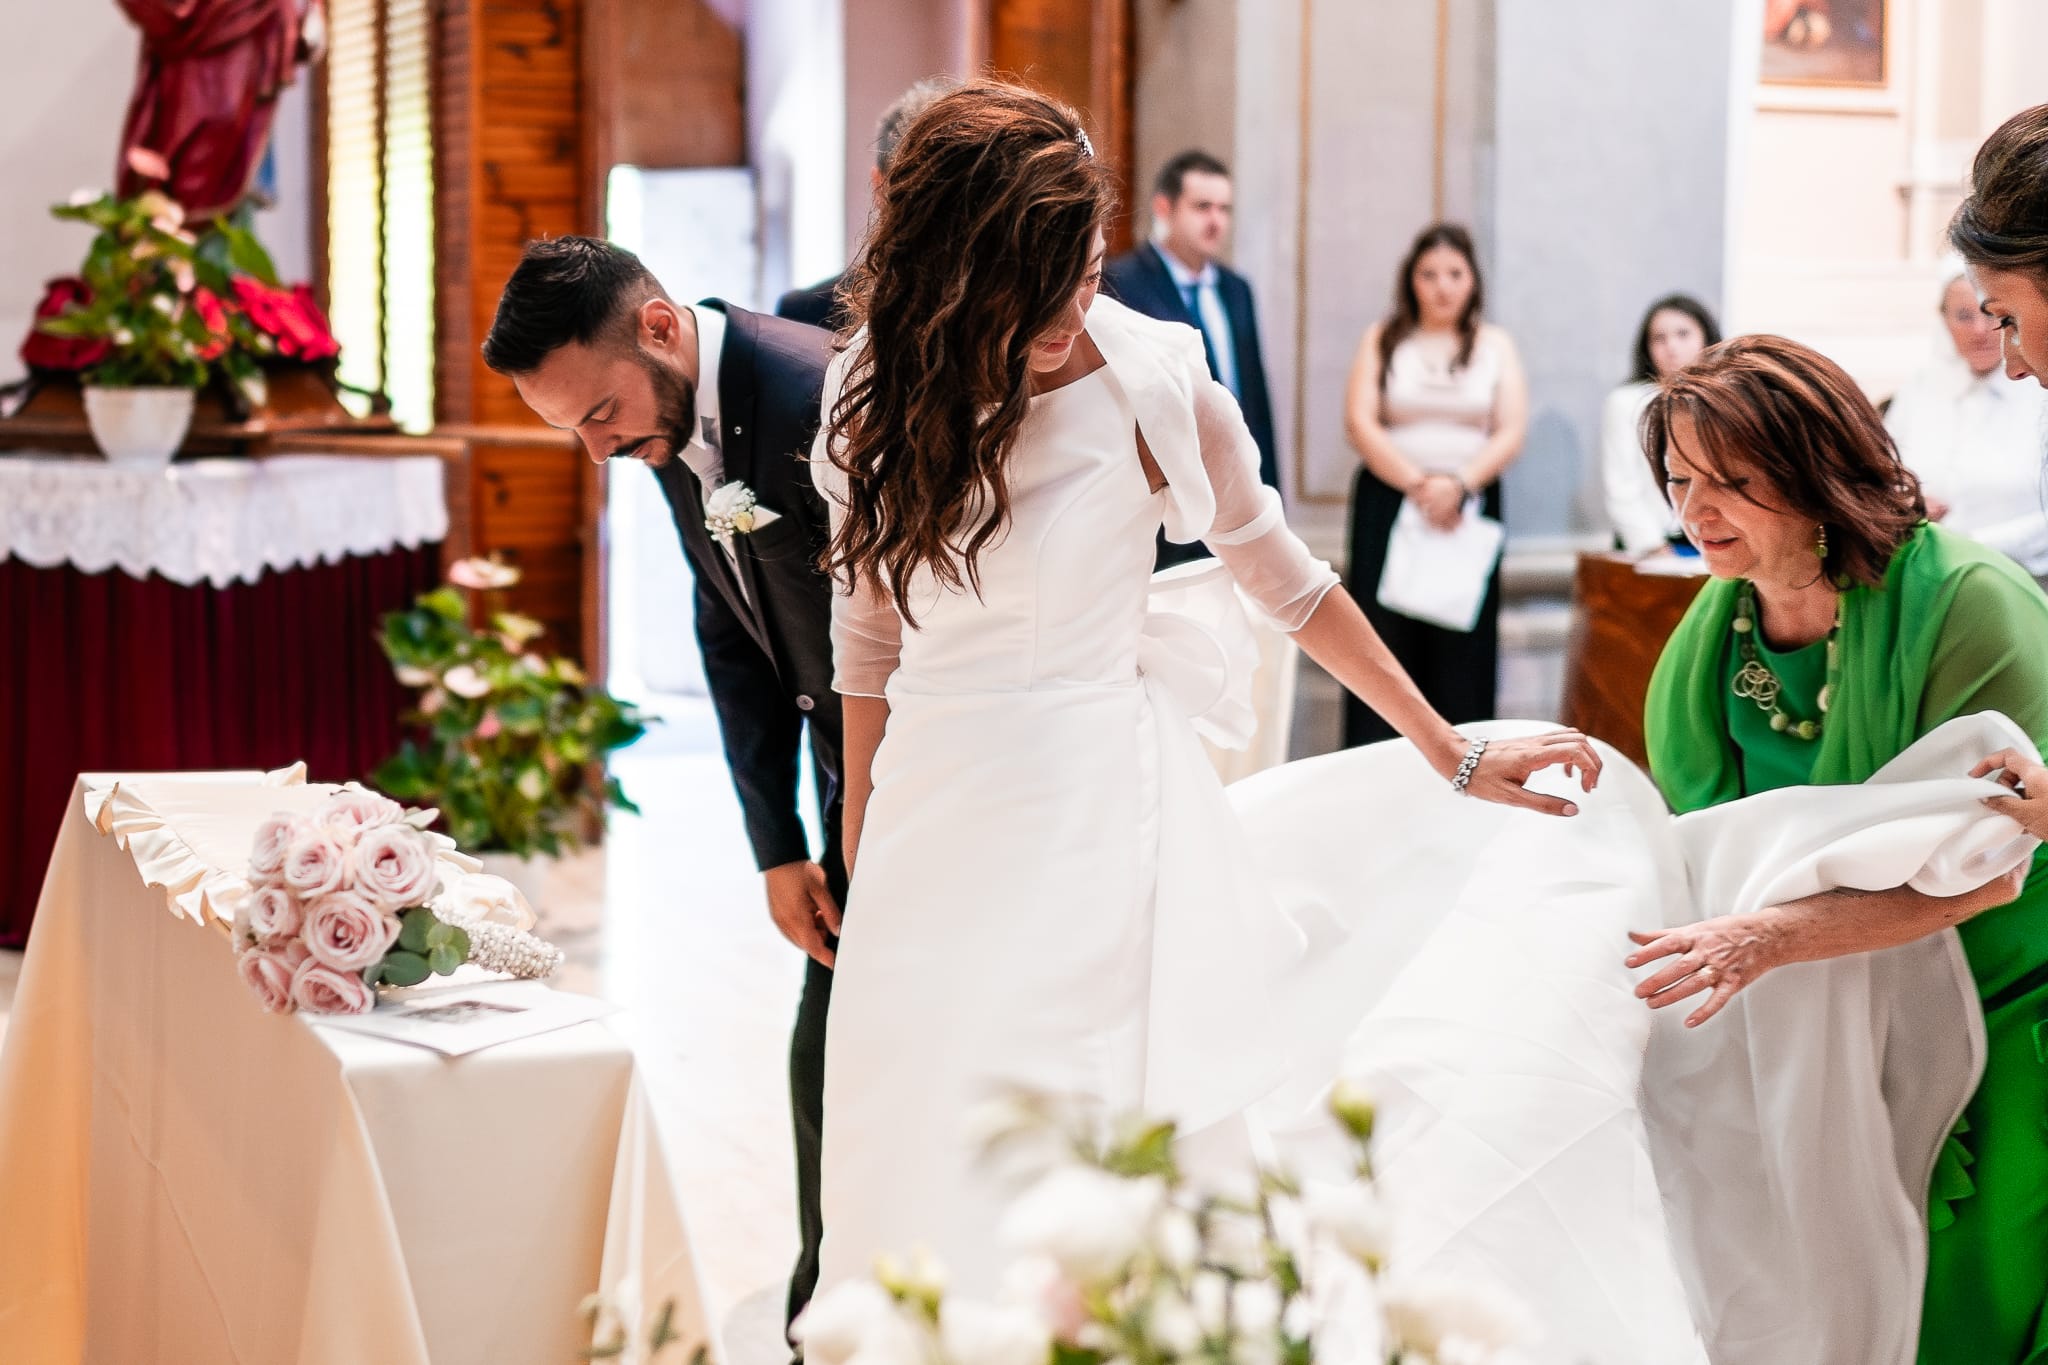 Tania Matteo Matrimonio a Sulmona in Abruzzo cerimonia ingresso sposa mamma sistema abito